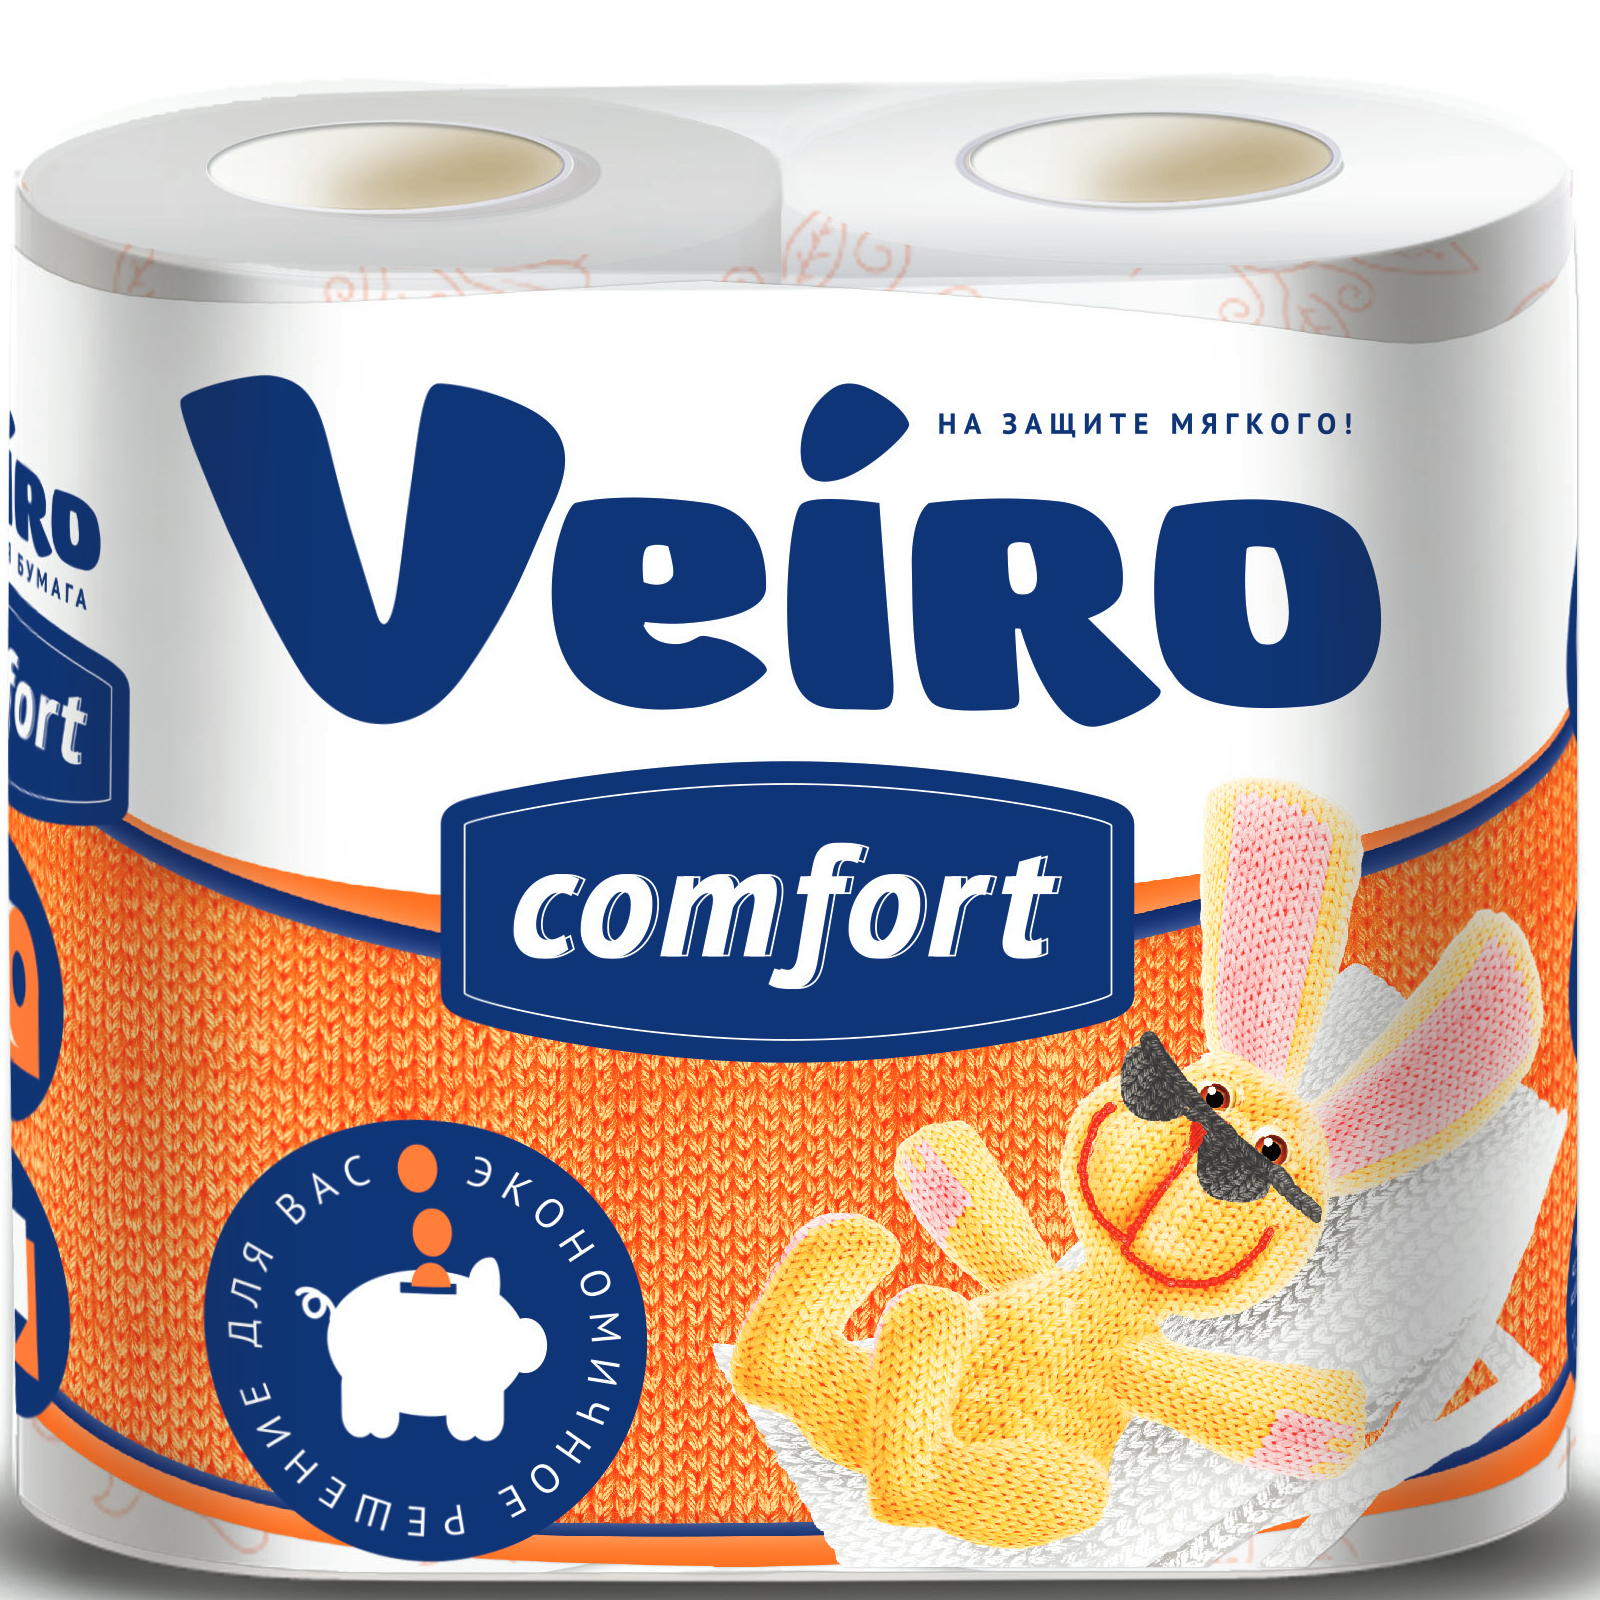 Бумага туалетная Linia Veiro comfort 2 слоя, 4 рулона, 17,5 м туалетная бумага влажная comfort smart 1 слой 42 шт